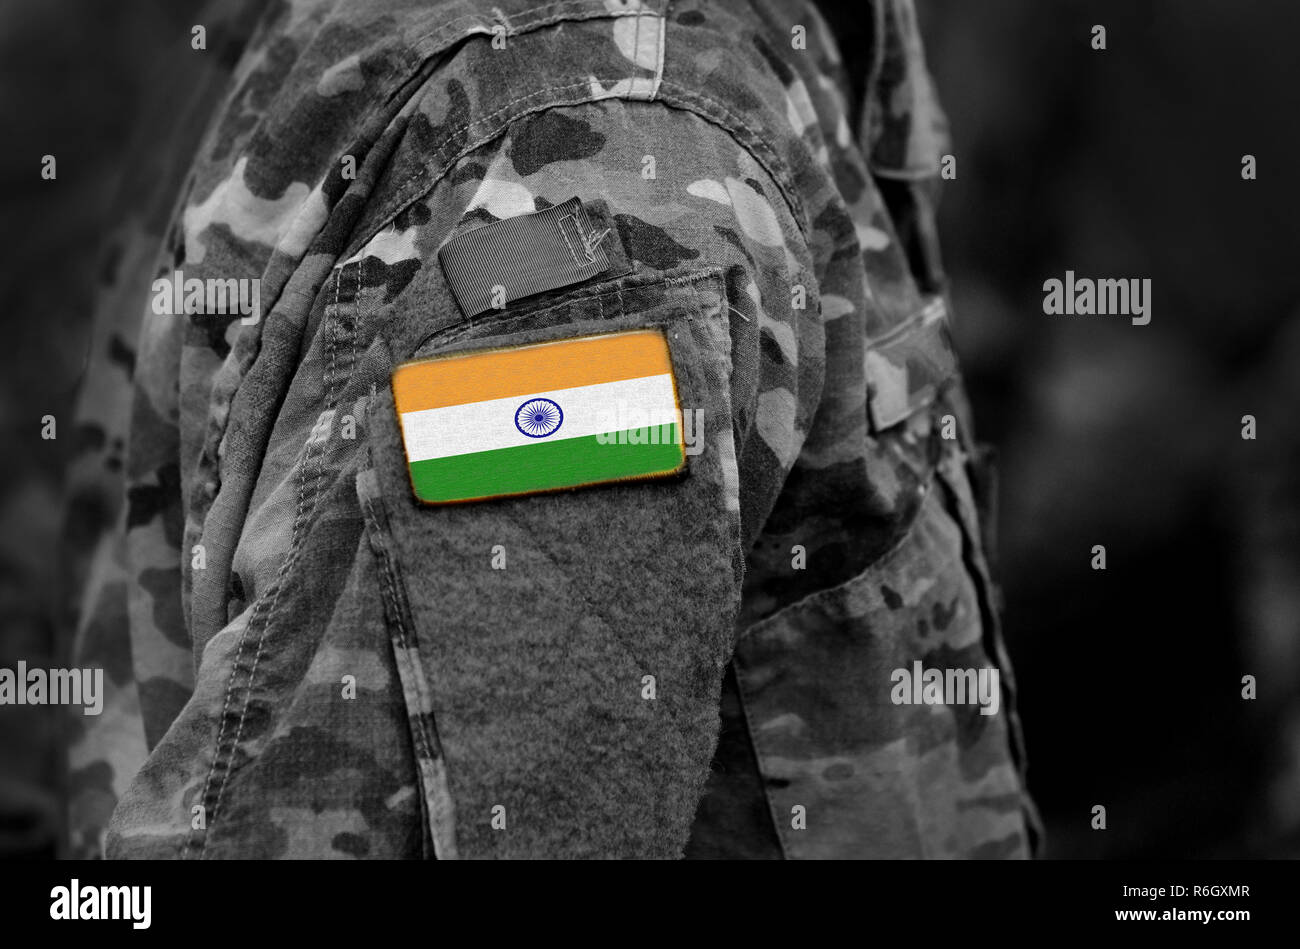 Drapeau de l'Inde sur les uniformes militaires. L'Inde drapeau sur le bras de soldats (collage). Banque D'Images